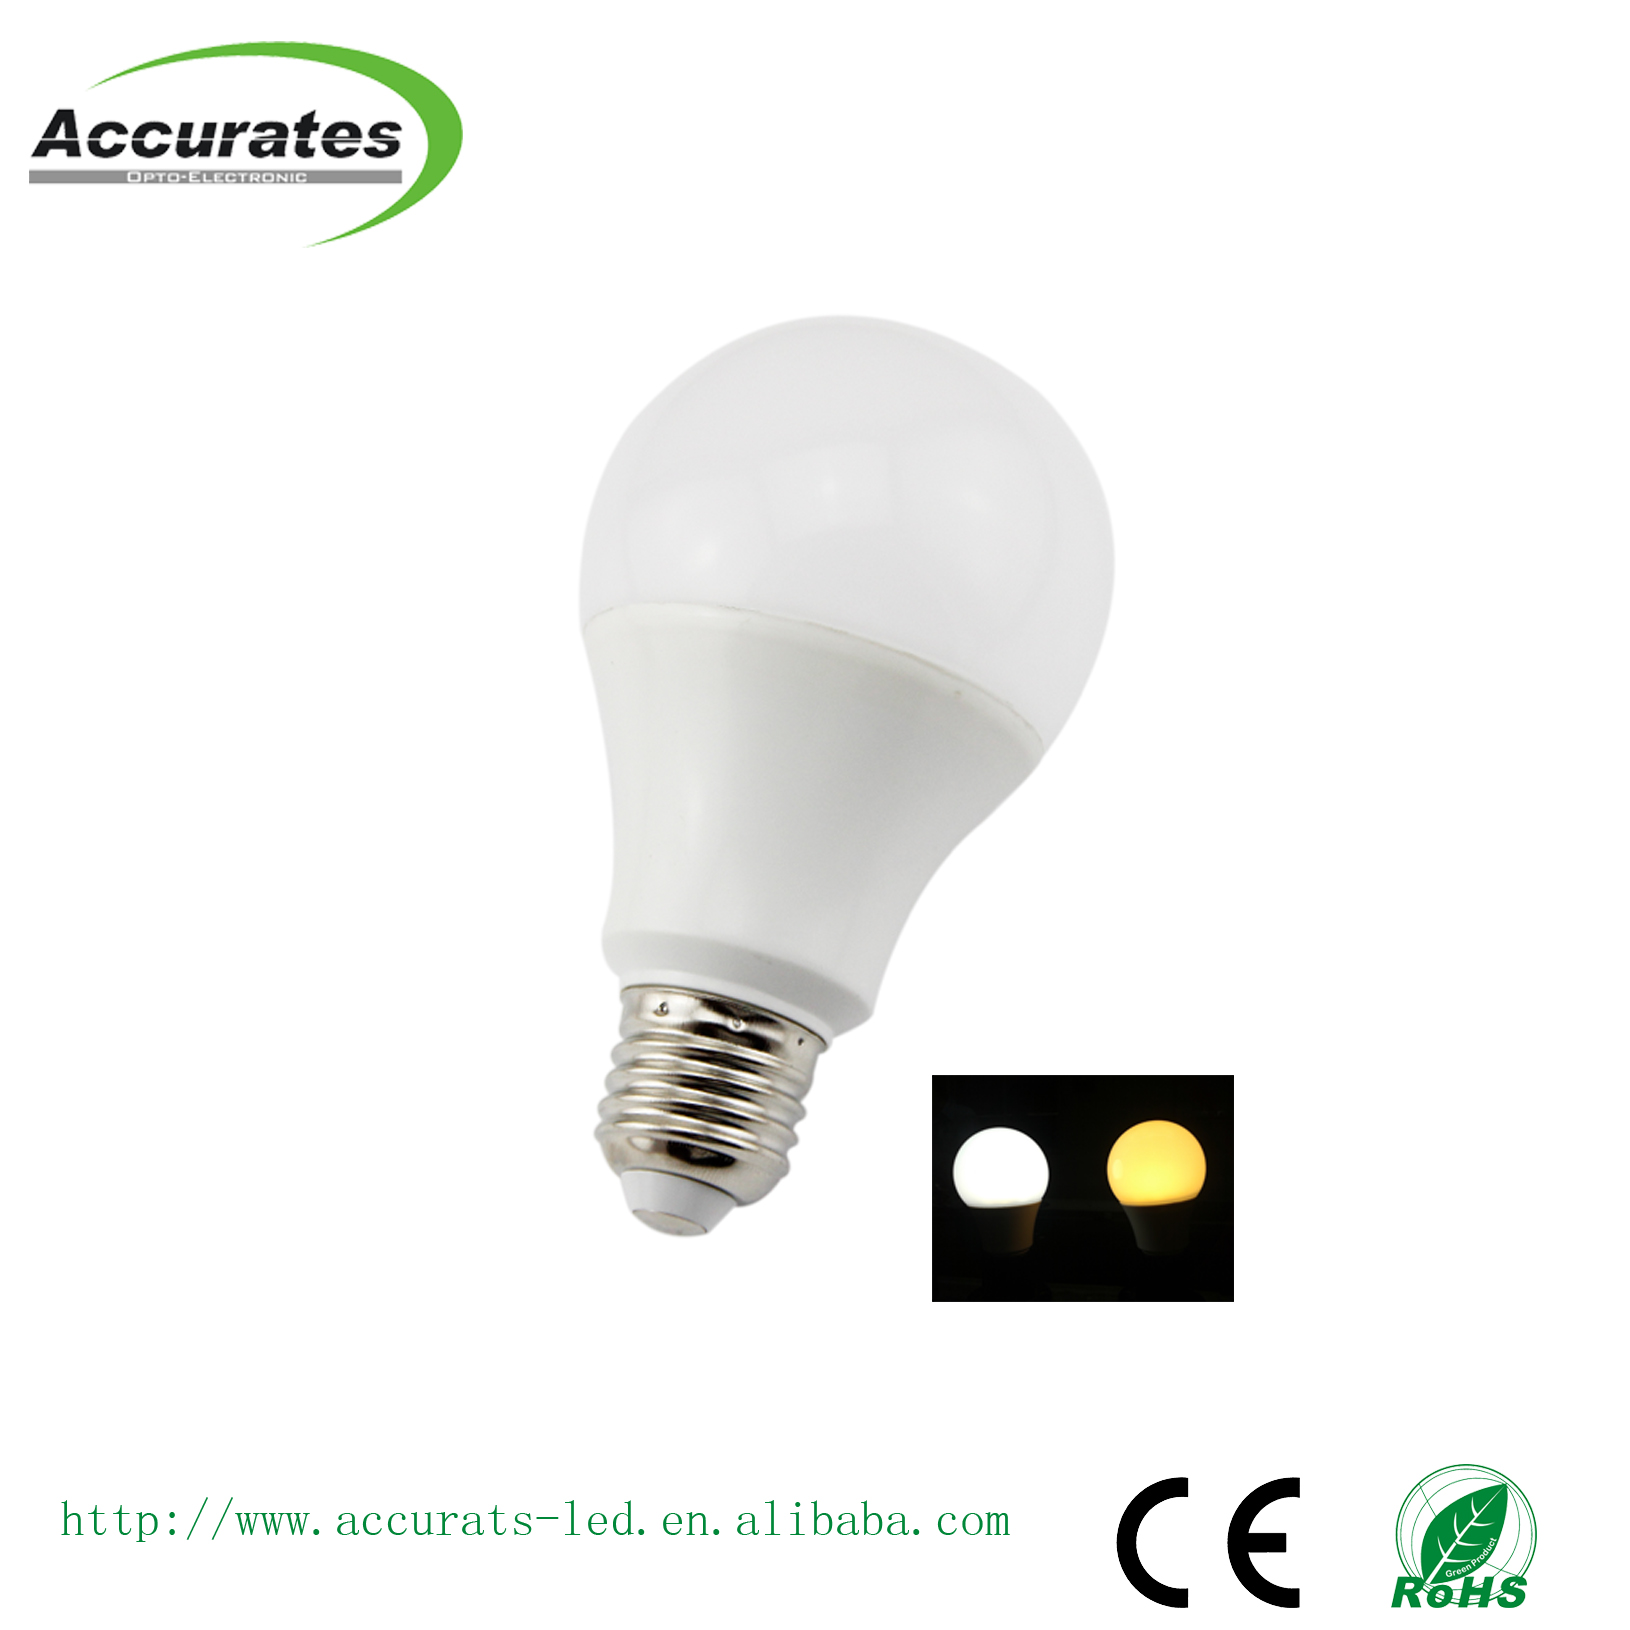 AOE-BL249BE27-12W(A70) AX100-130V LED dommable bulb